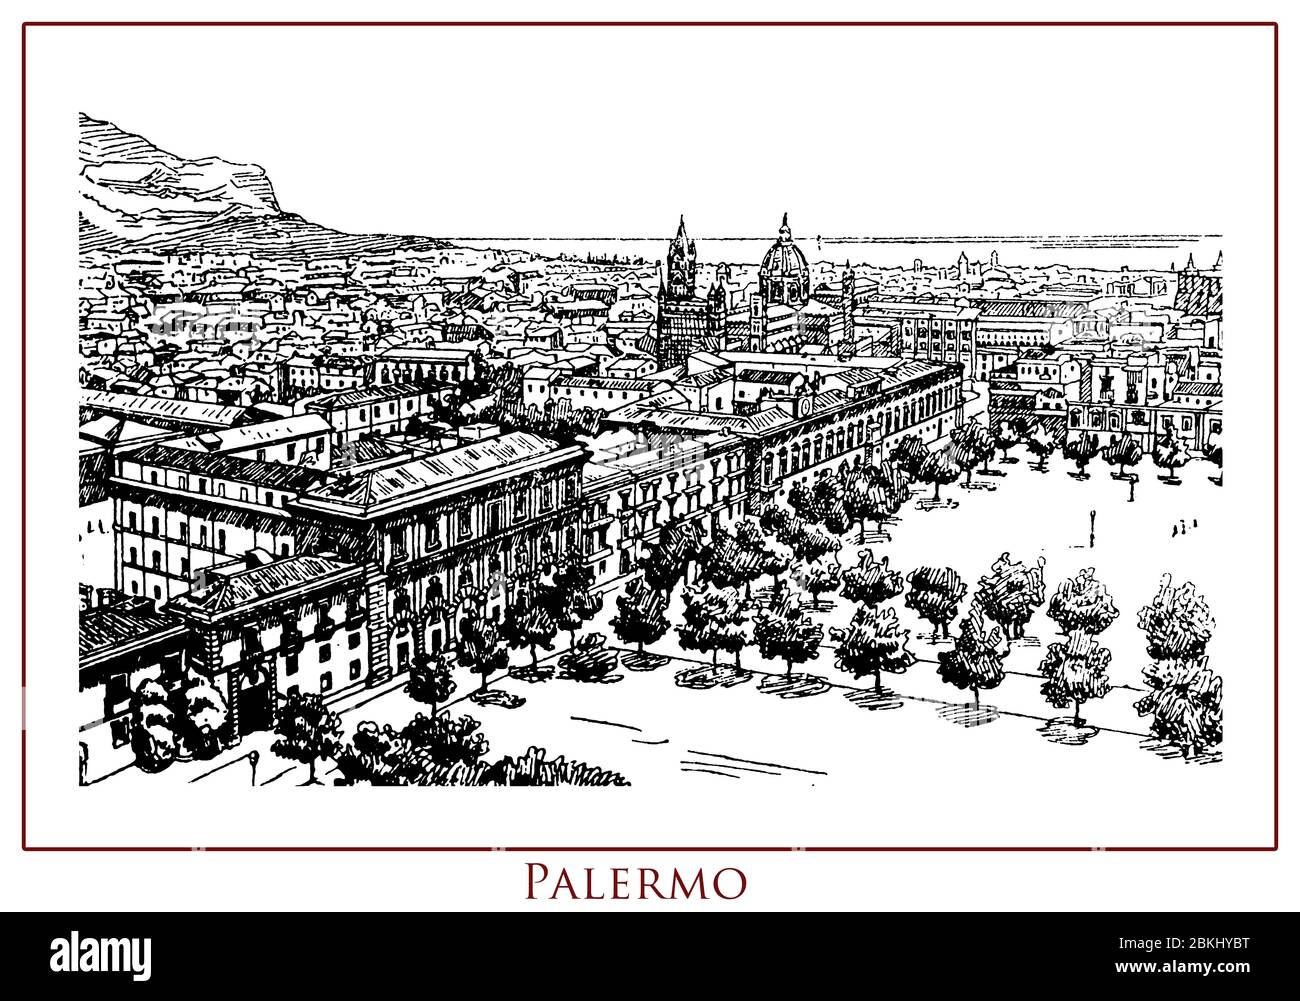 Vintage illustrierte Tabelle mit einem Panoramablick auf die Stadt Palermo, 2700 Jahre alt, Hauptstadt von Sizilien Insel und Region Süditalien, Stadt reich an Geschichte, Kunst und Kultur. Stockfoto